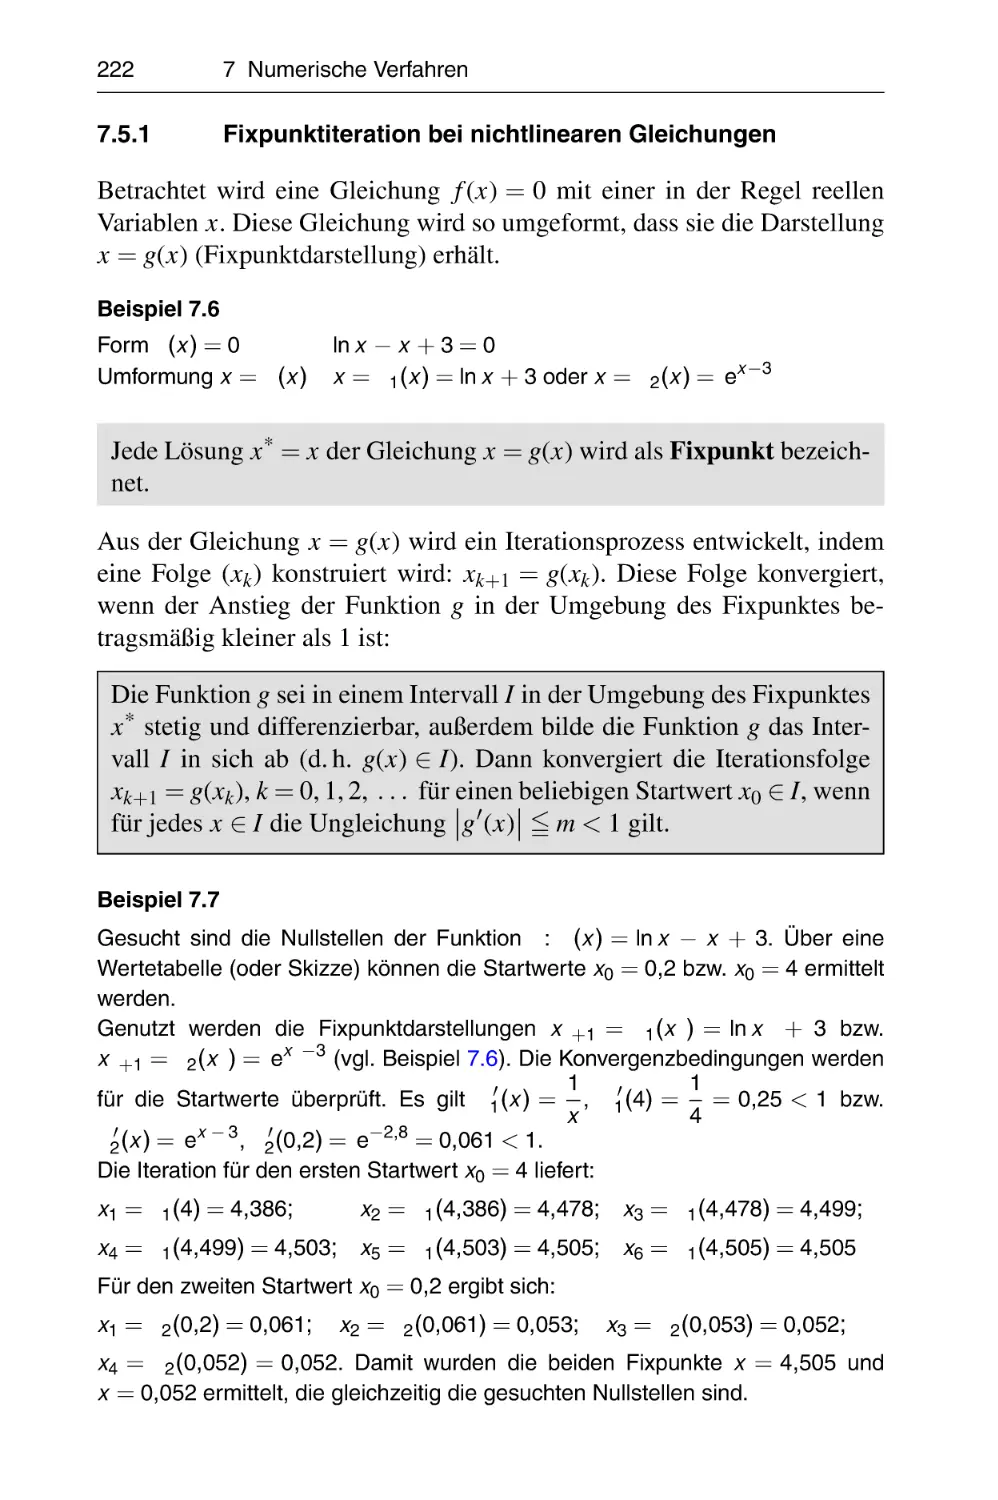 7.5.1 Fixpunktiteration bei nichtlinearen Gleichungen